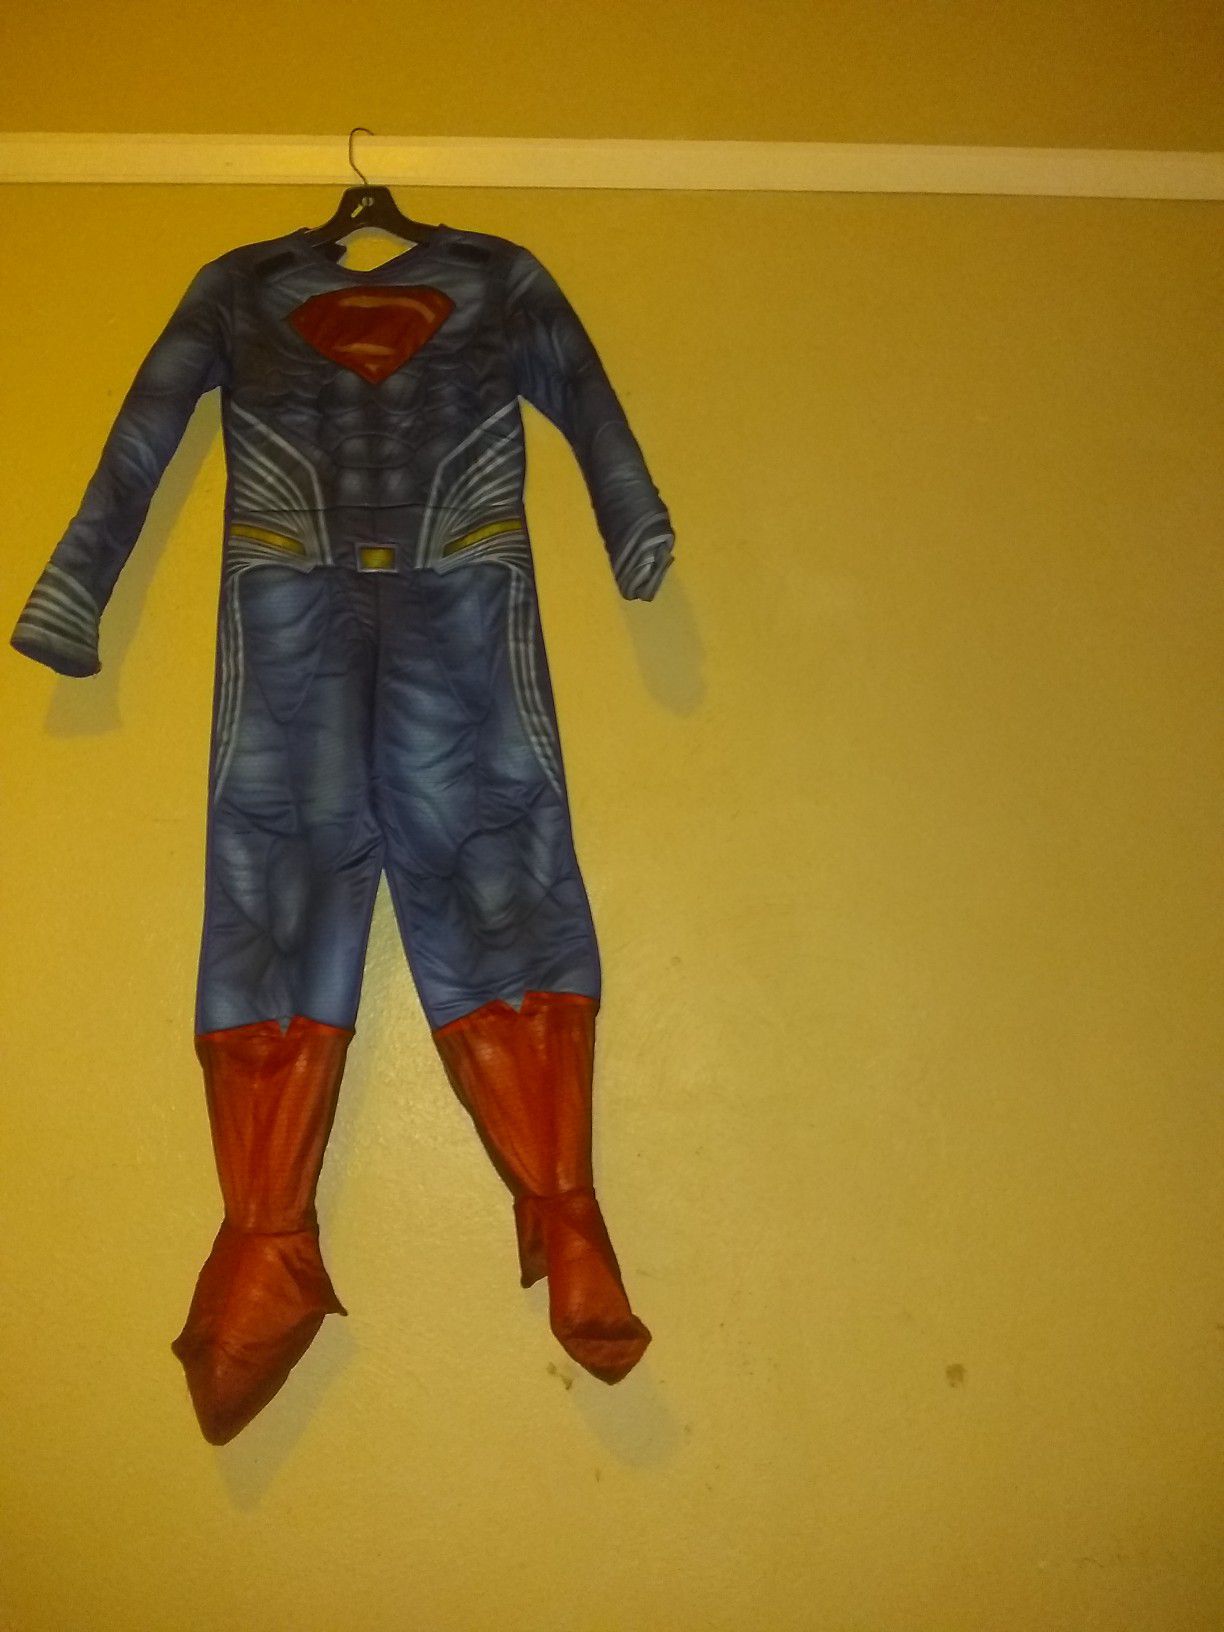 Super man costume